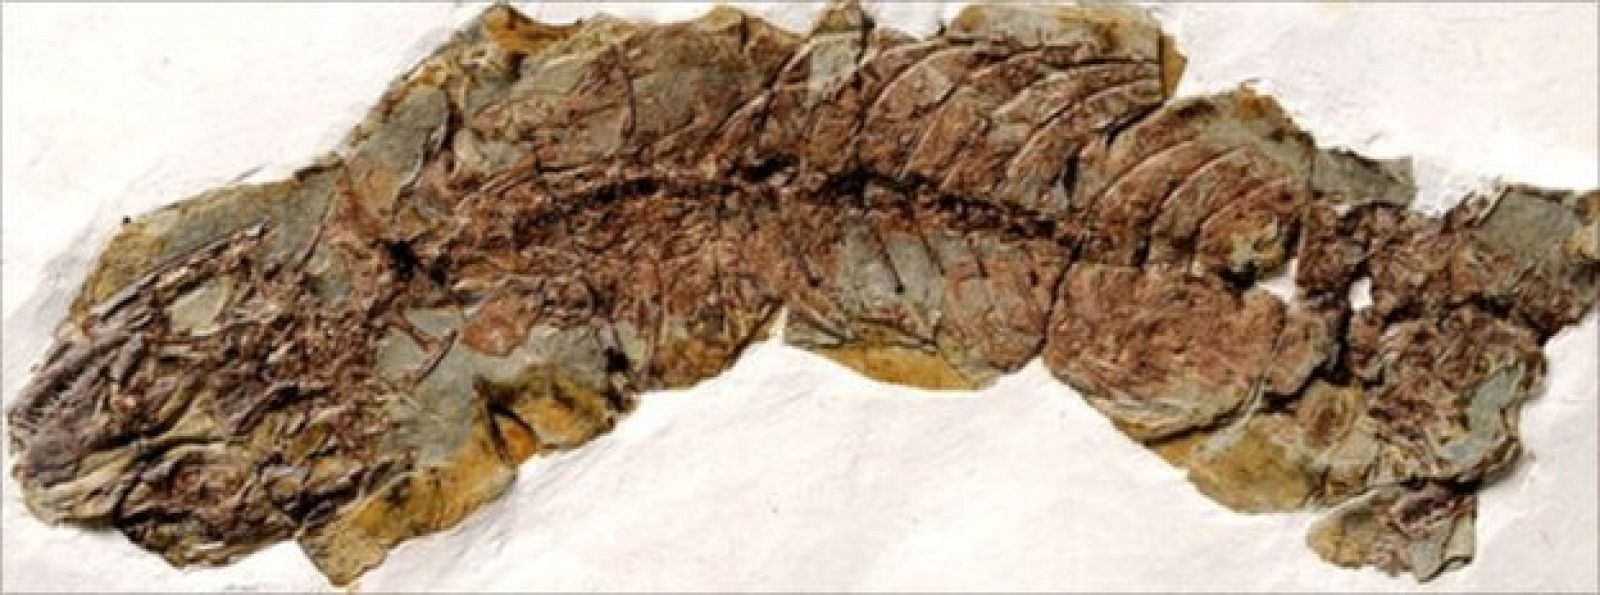 Descubren los fósiles de una hembra de lagarto embarazada